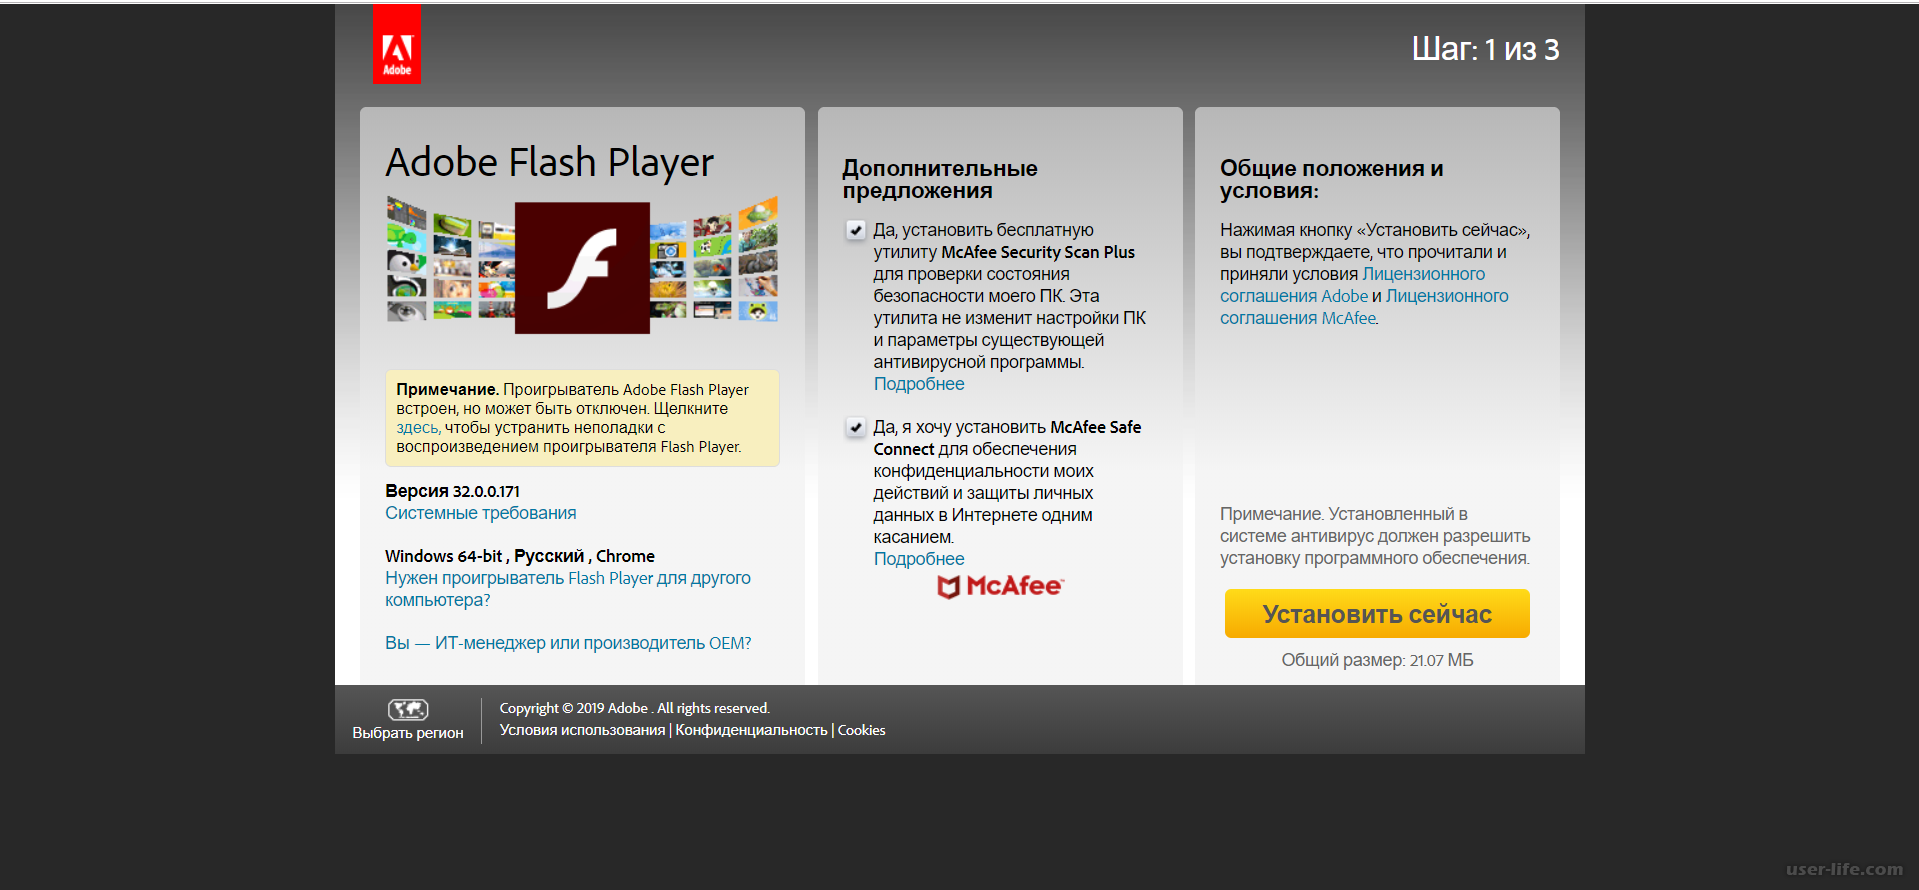 Флеш плеер для виндовс 7. Установить Flash Player для Windows 7. Как обновить флеш плеер на LG 49uj639v. Будет отключе flashplayer обхявление. Флеш плеер 7 64